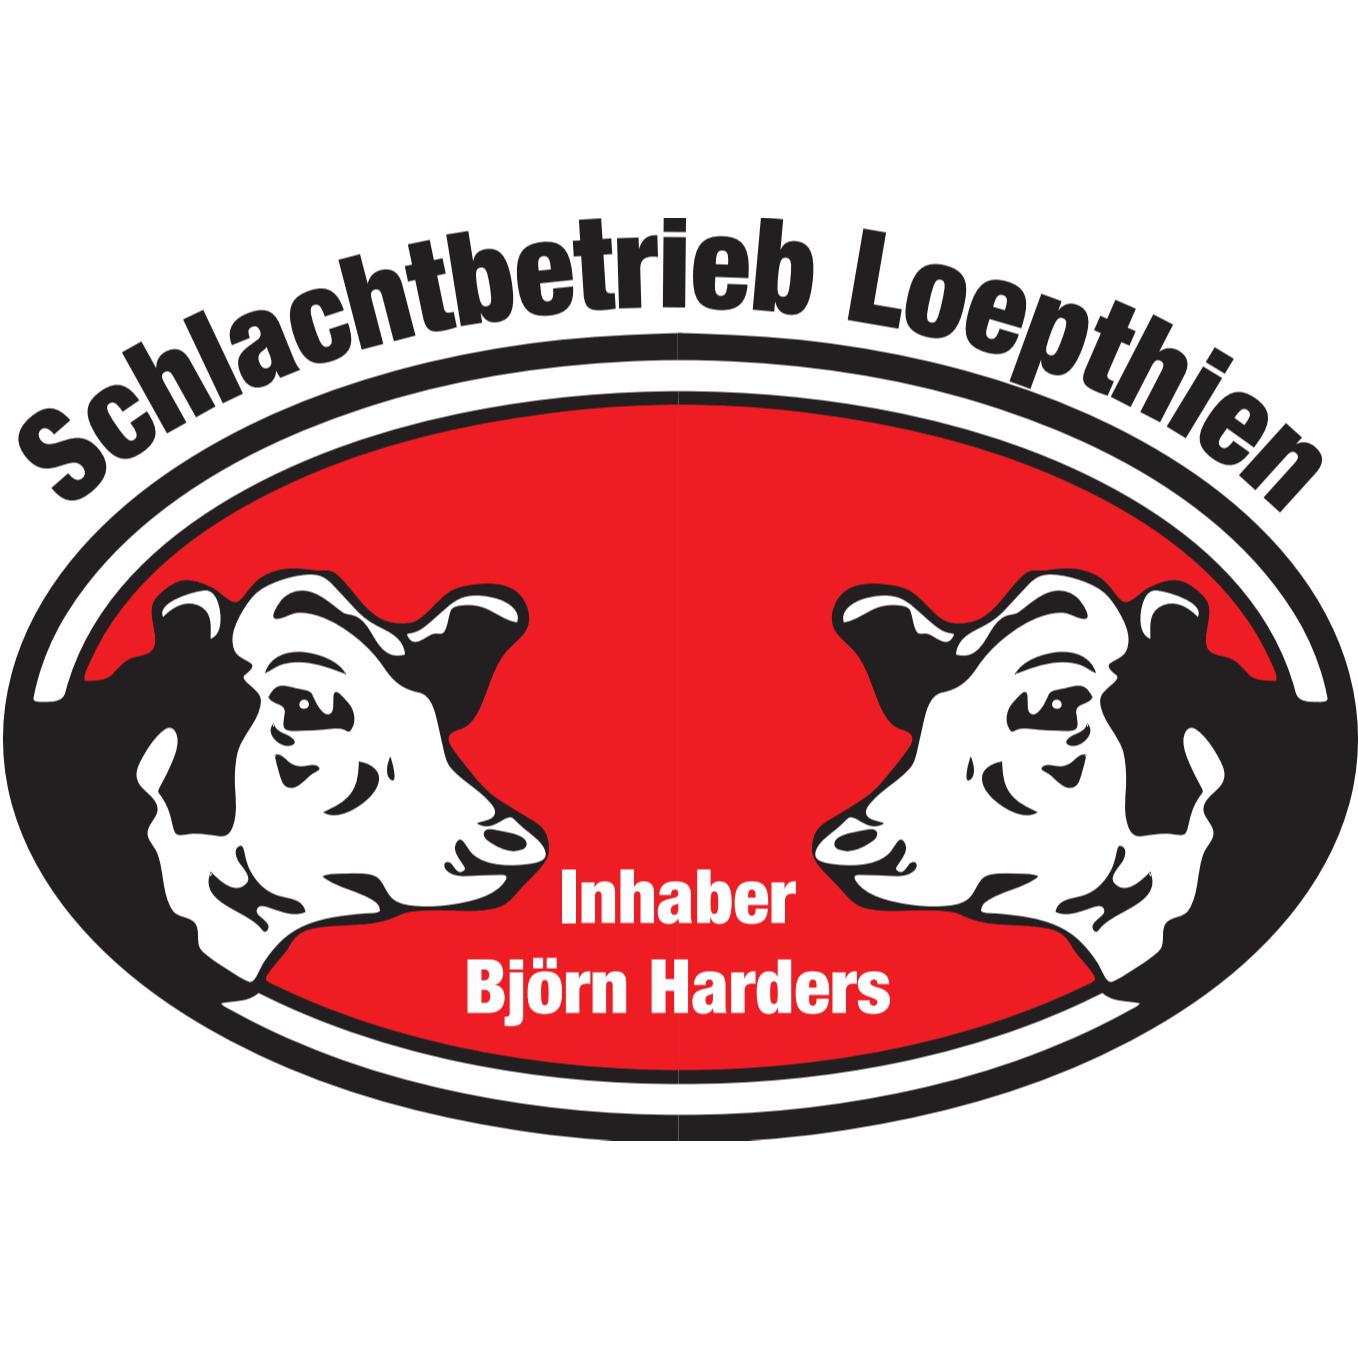 Schlachtbetrieb Loepthien in Jevenstedt - Logo